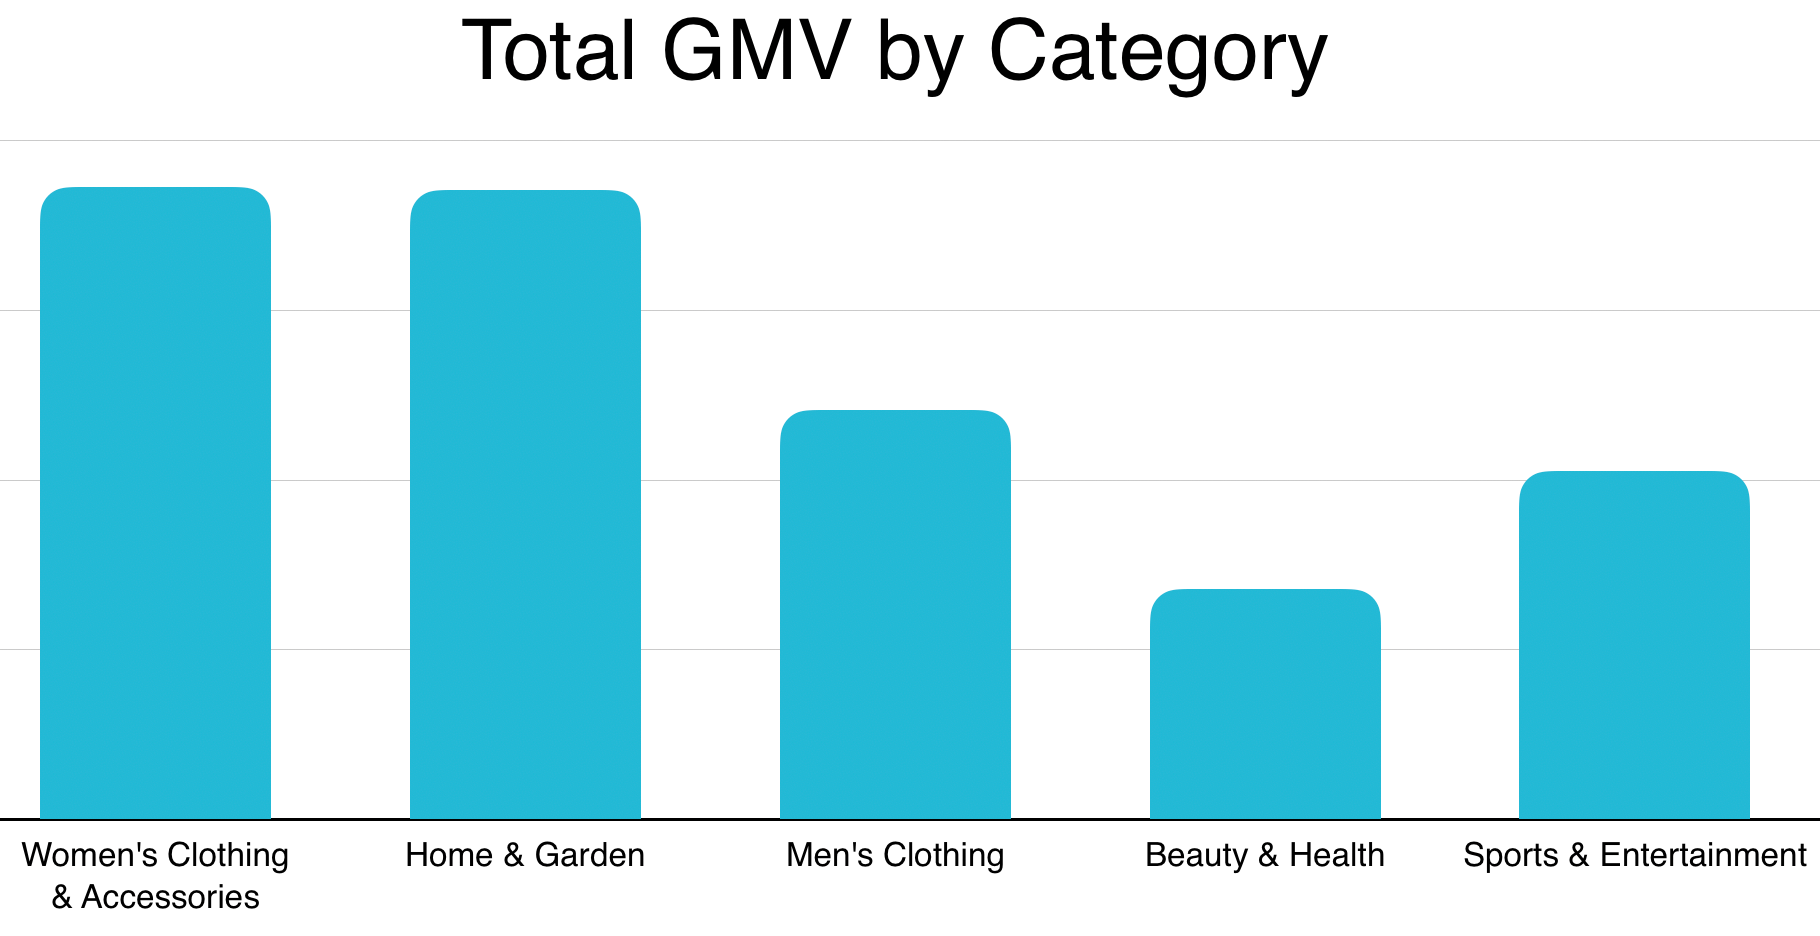 2019年加拿大利基市场GMV